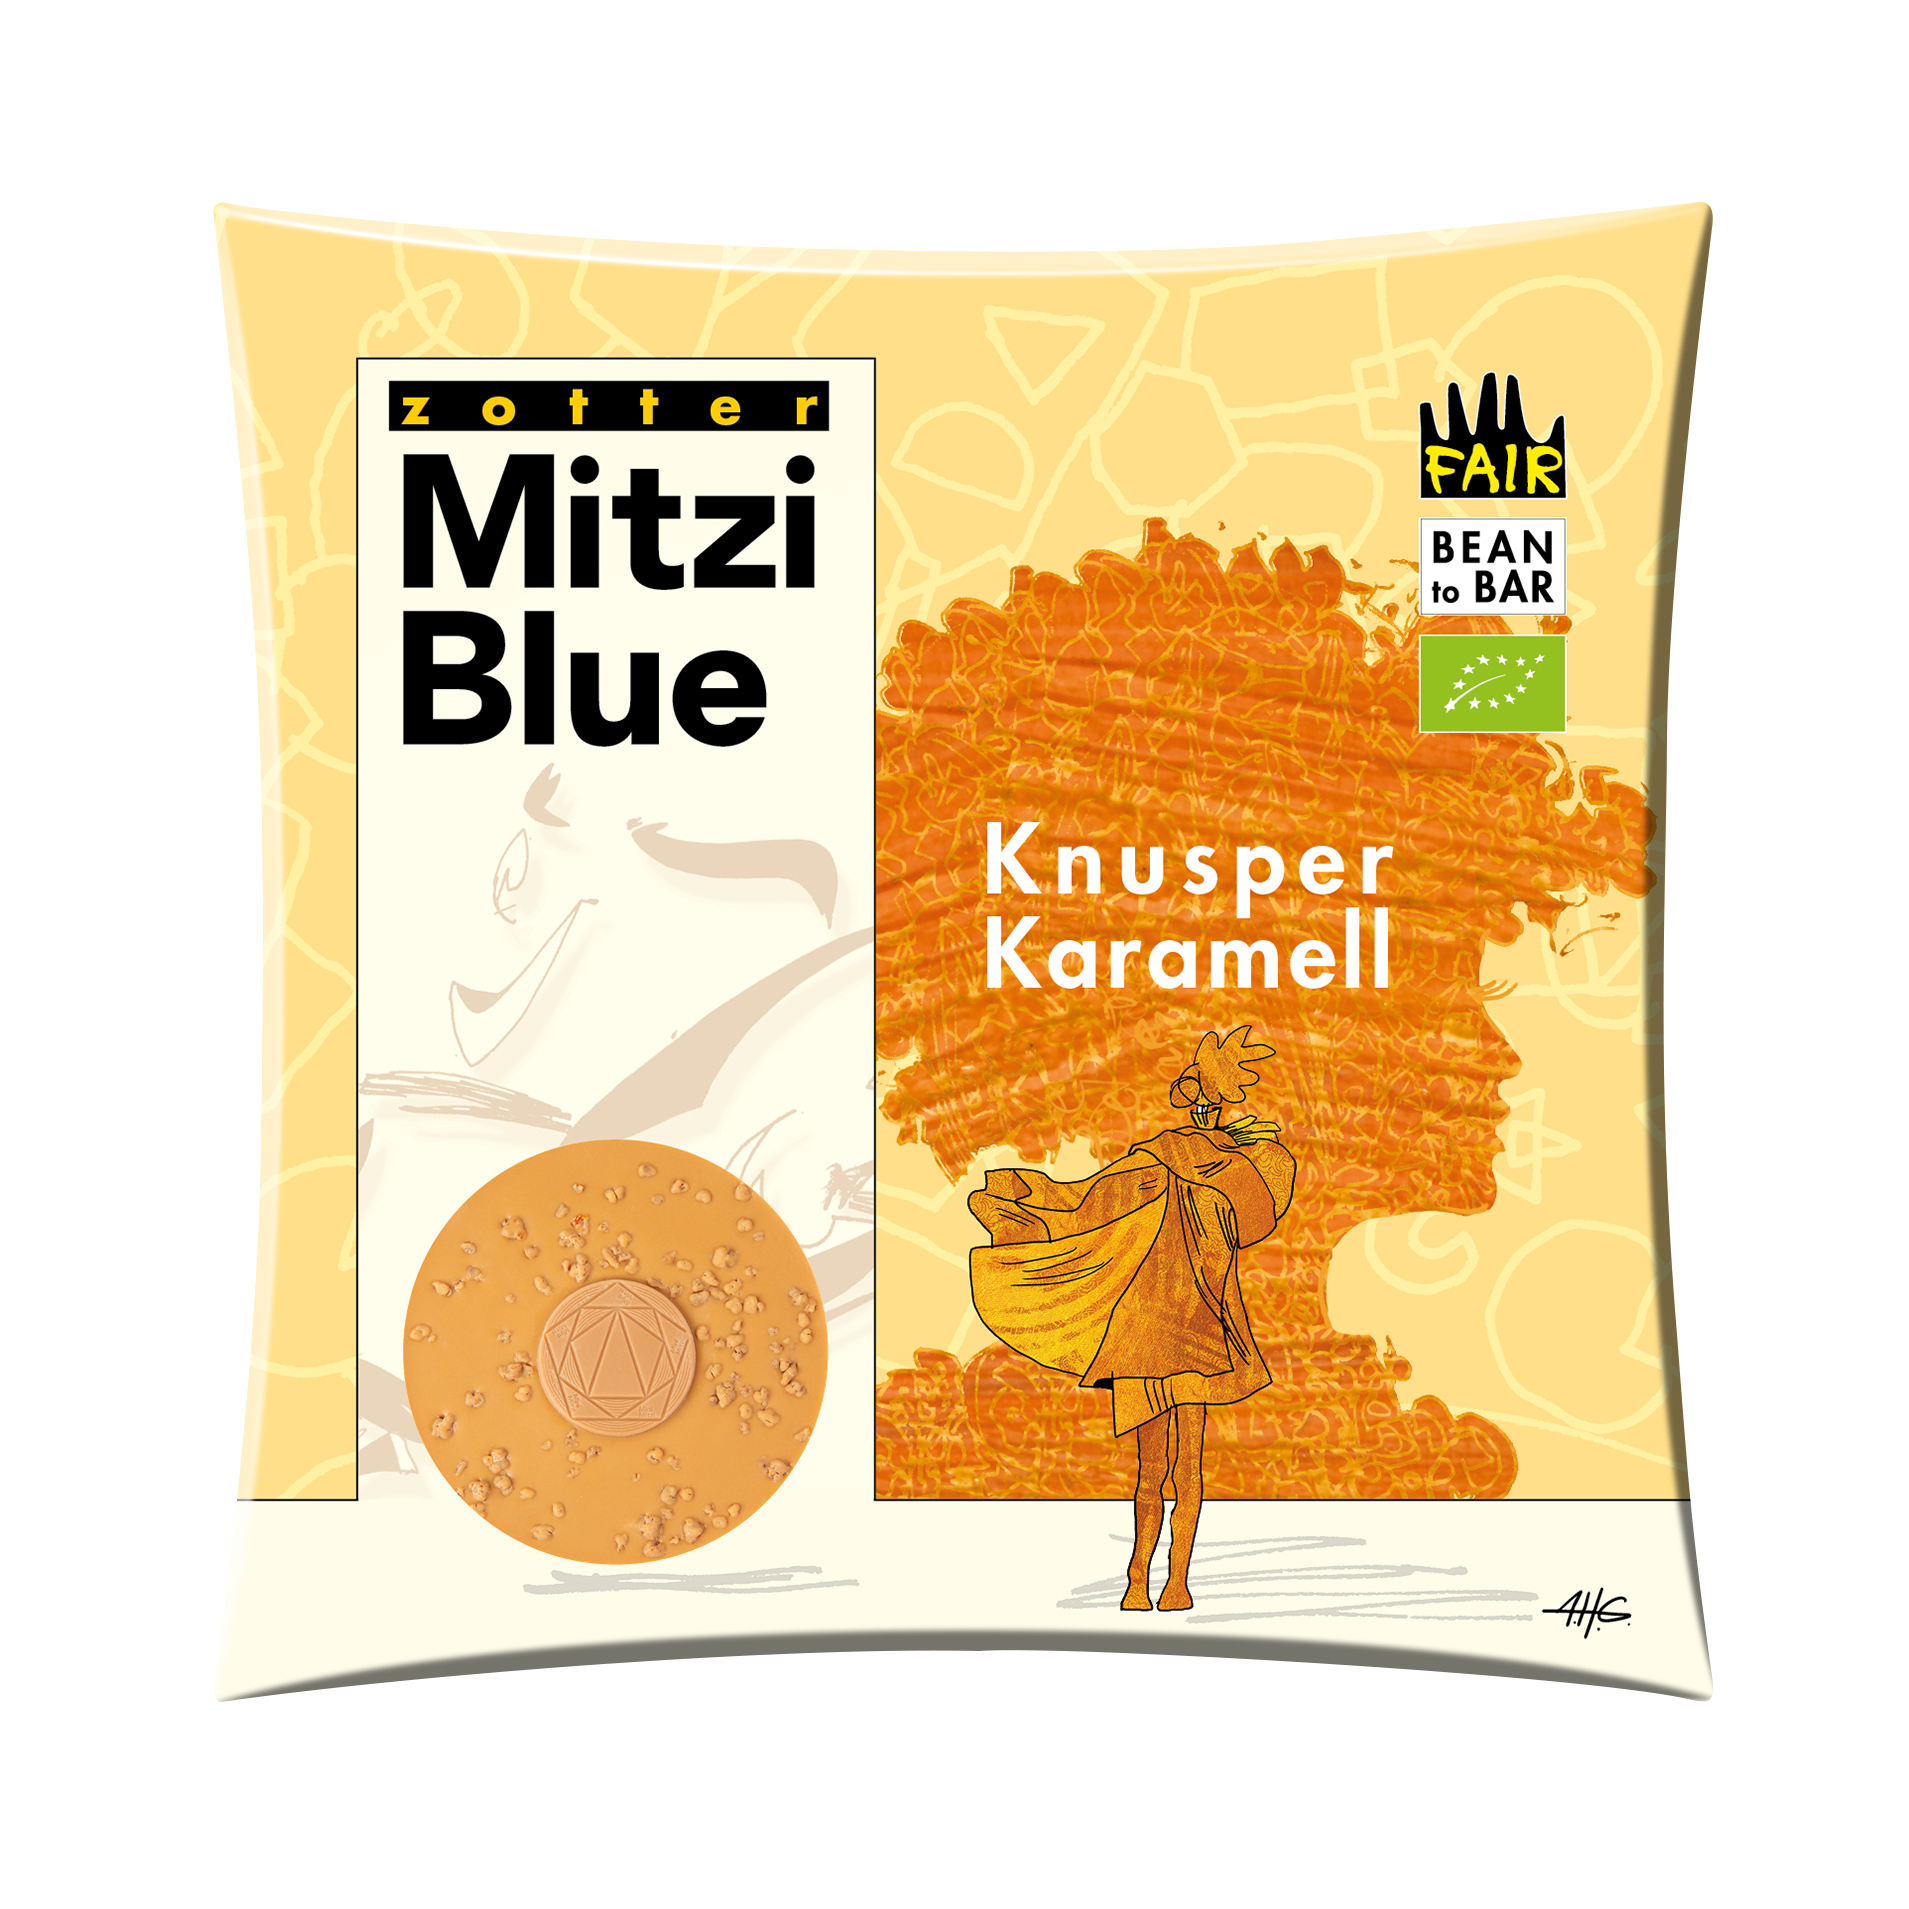 Mitzi Blue - Knusper Karamell